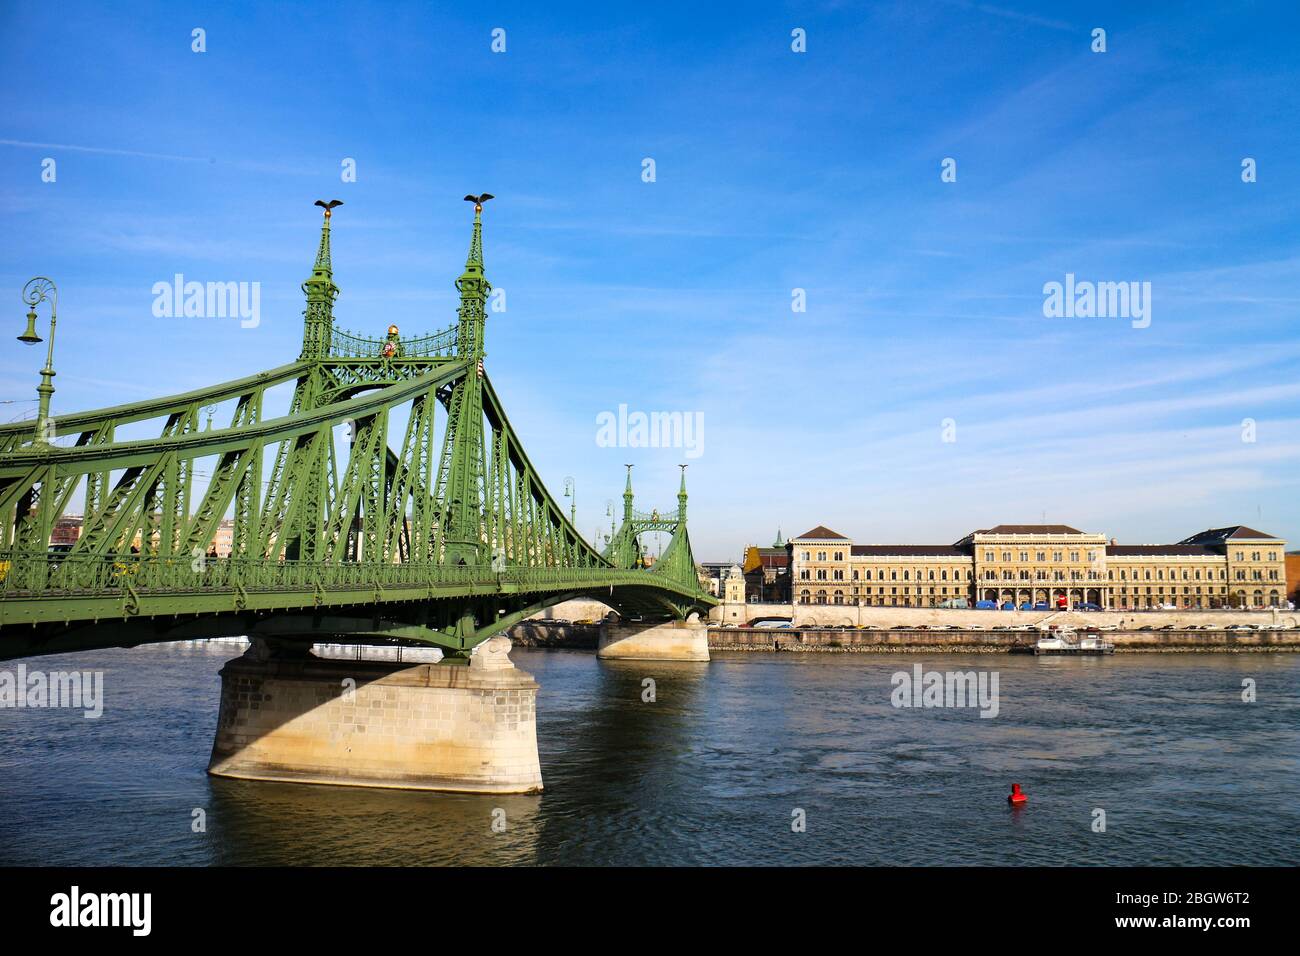 Ponte della libertà (o Ponte della libertà) che collega Buda e Pest attraverso il fiume Danubio nel centro della città meridionale di Budapest, capitale dell'Ungheria. Foto Stock